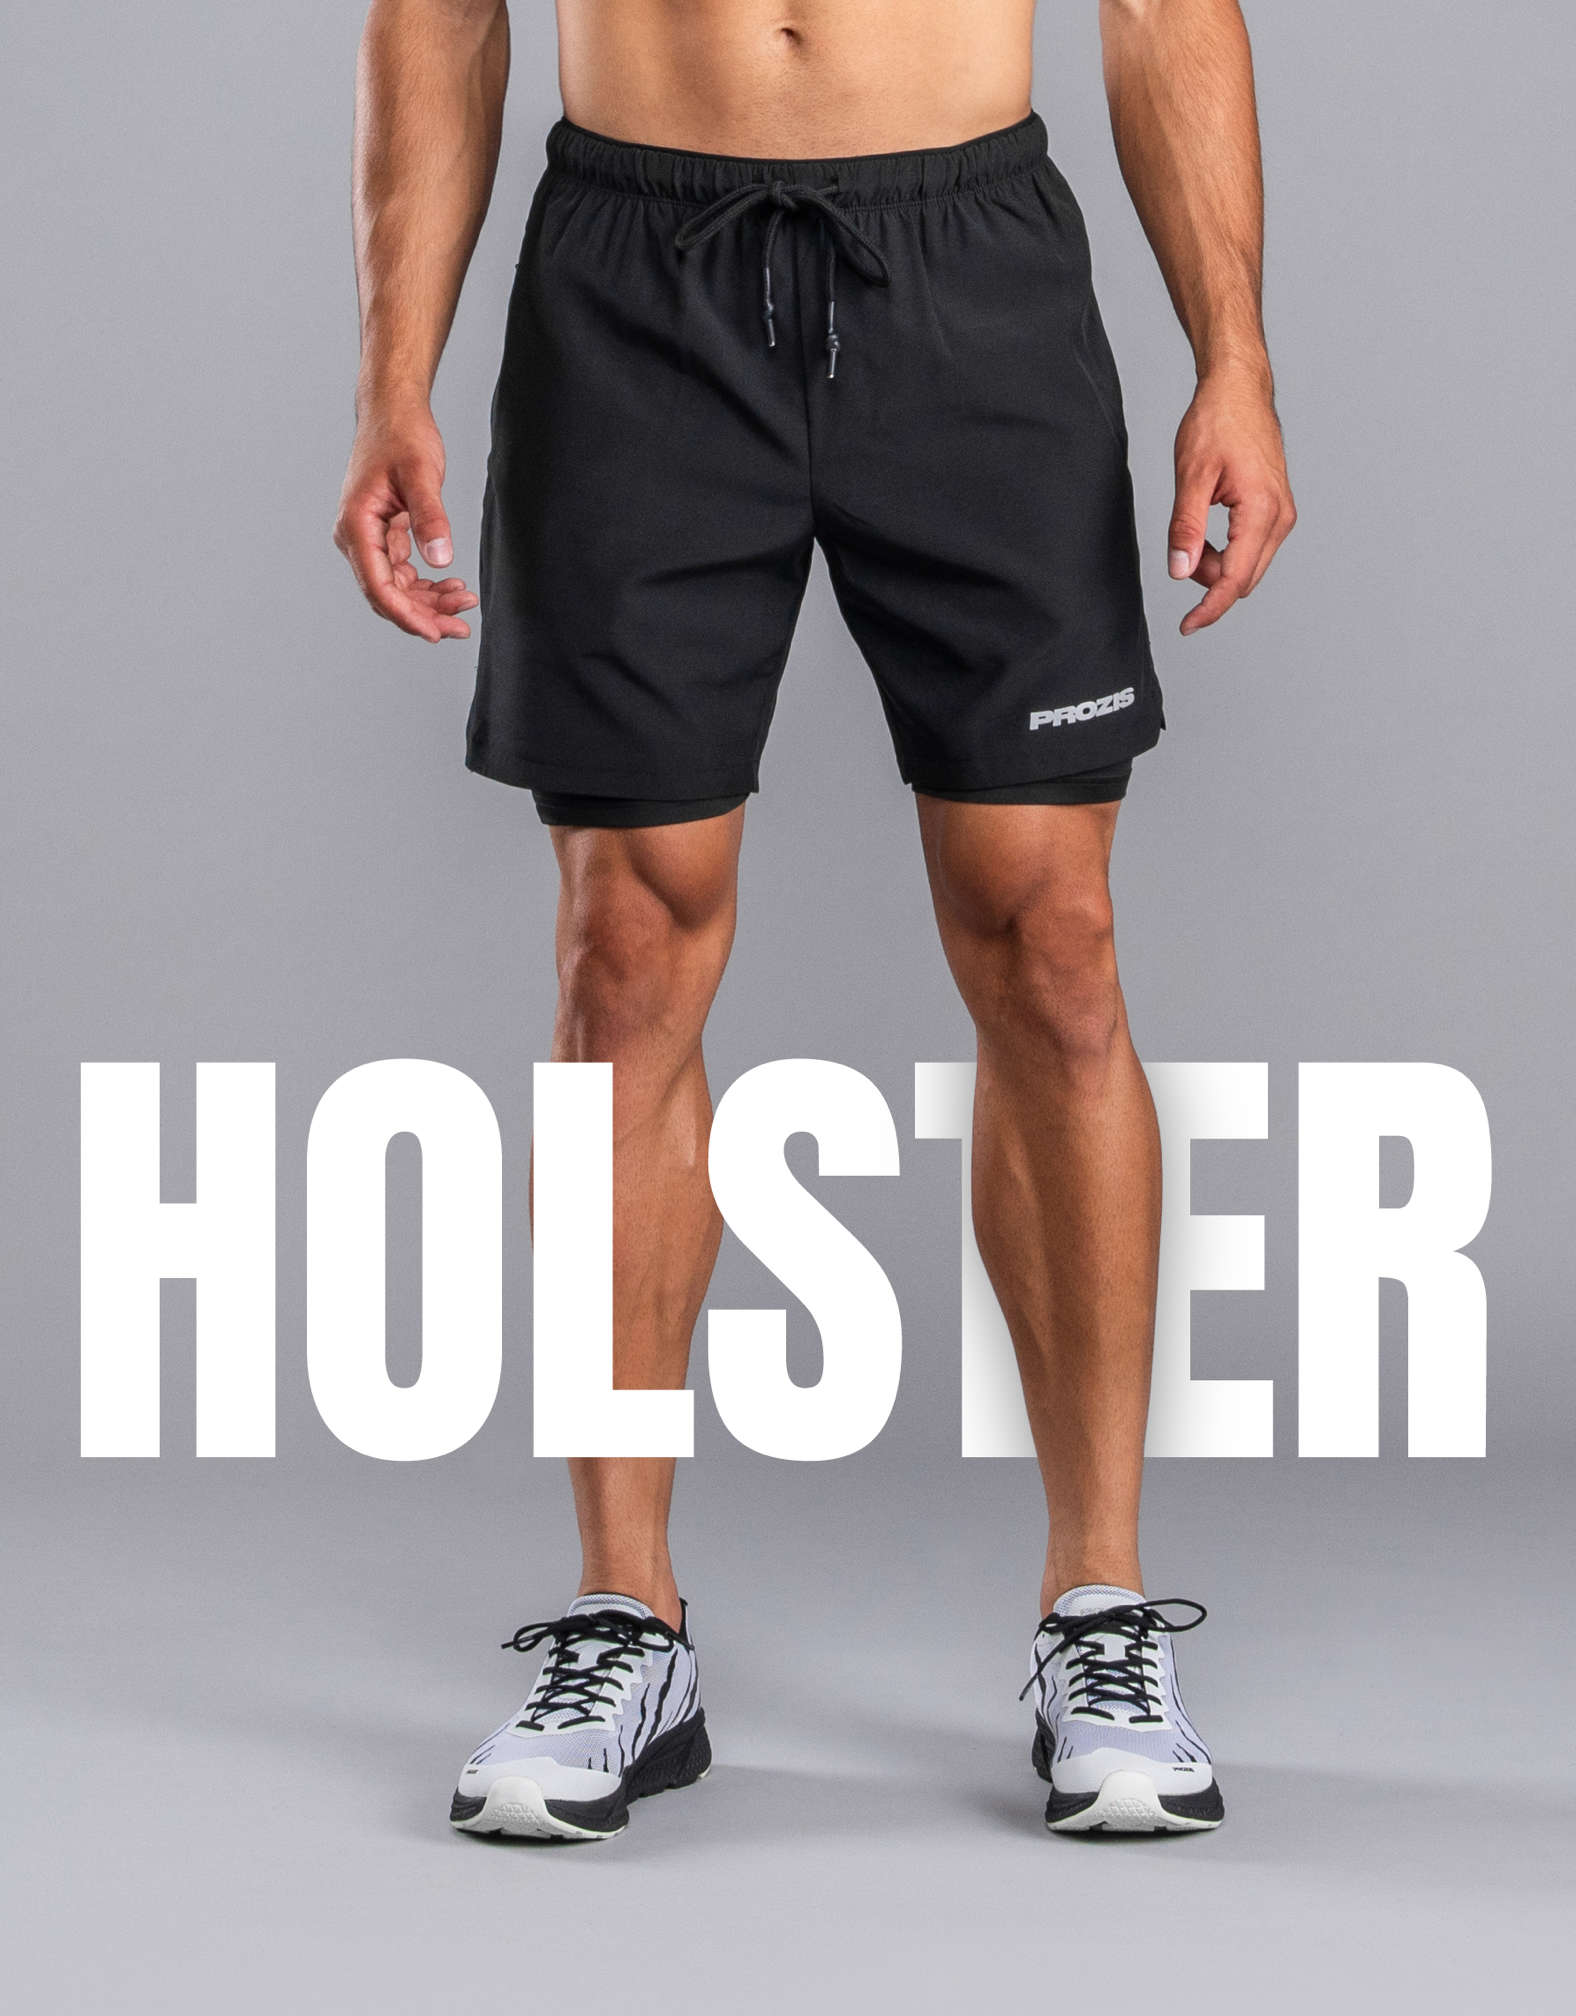 Pantaloncini da Corsa - Holster Black - Performance e Sport | Prozis